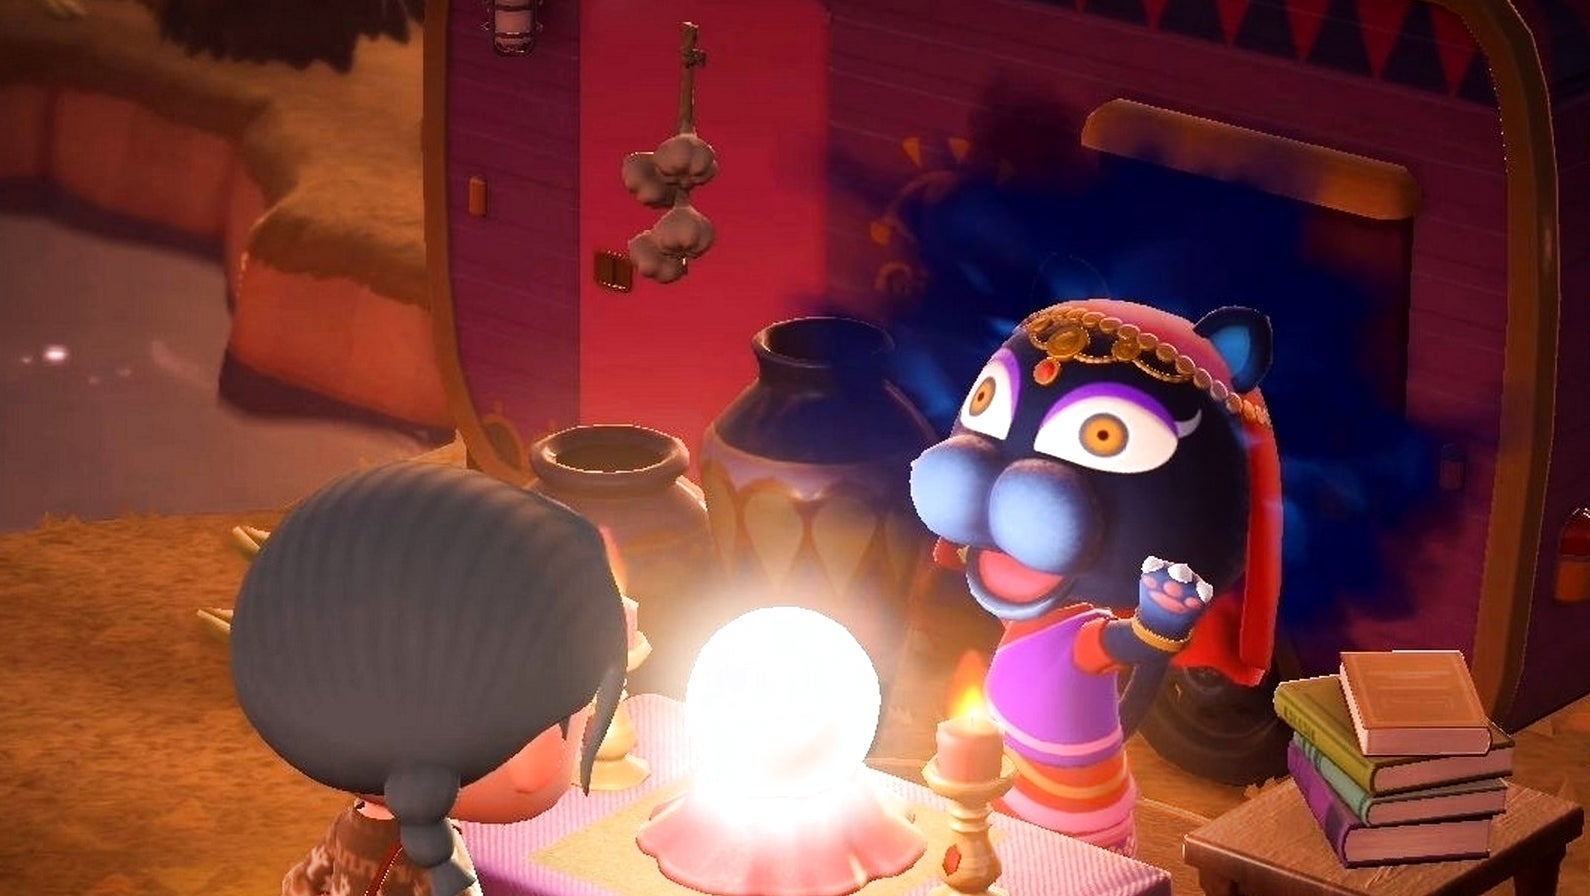 Bilder zu Animal Crossing New Horizons Smeralda und Glück - So funktionieren ihre Vorhersagen